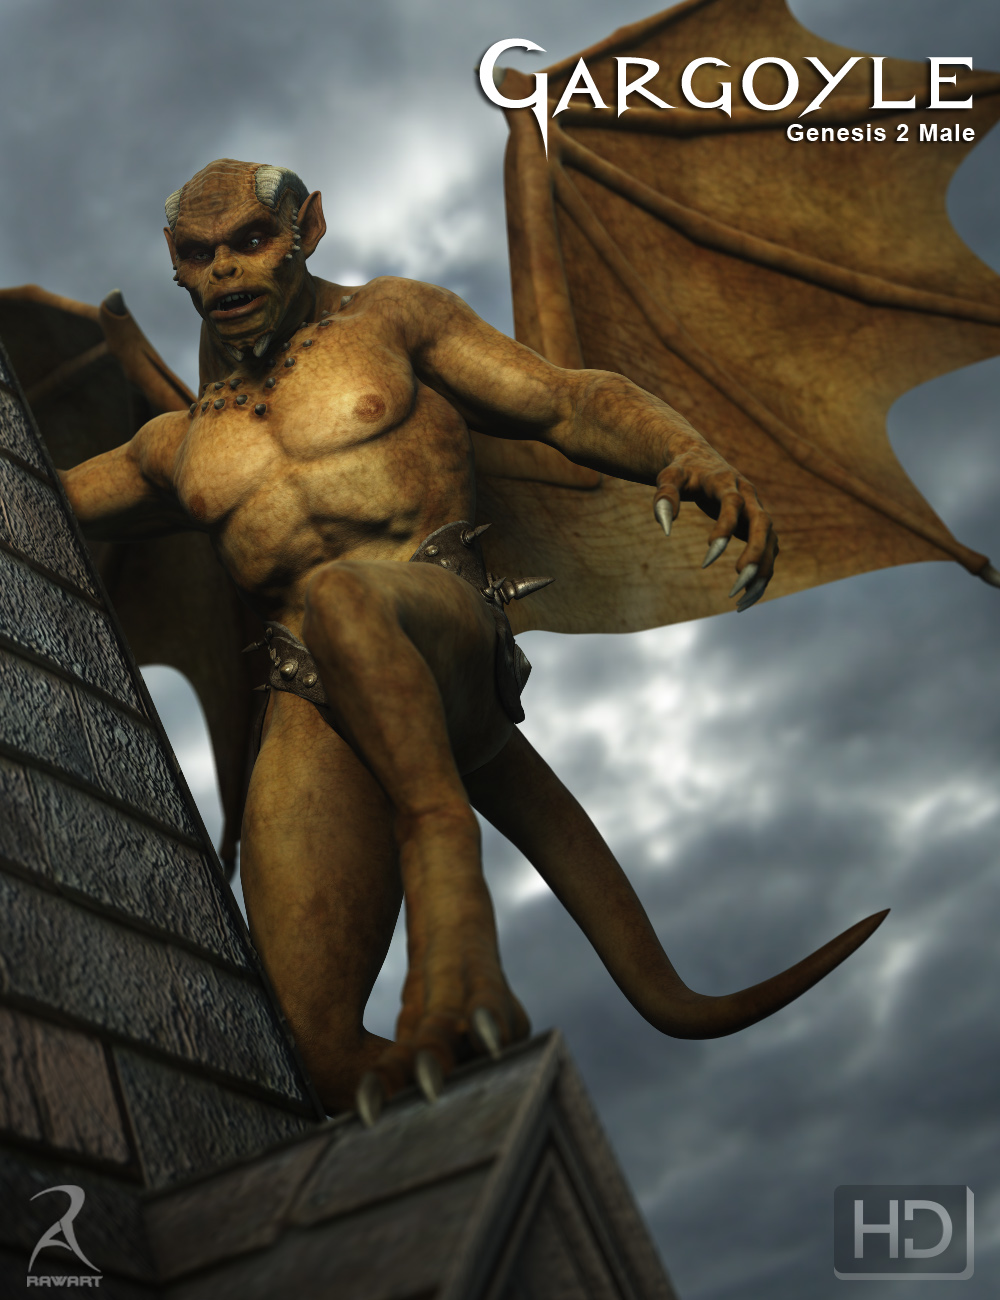 Gargoyle HD for Genesis 2 Male(s) by: RawArt, 3D Models by Daz 3D